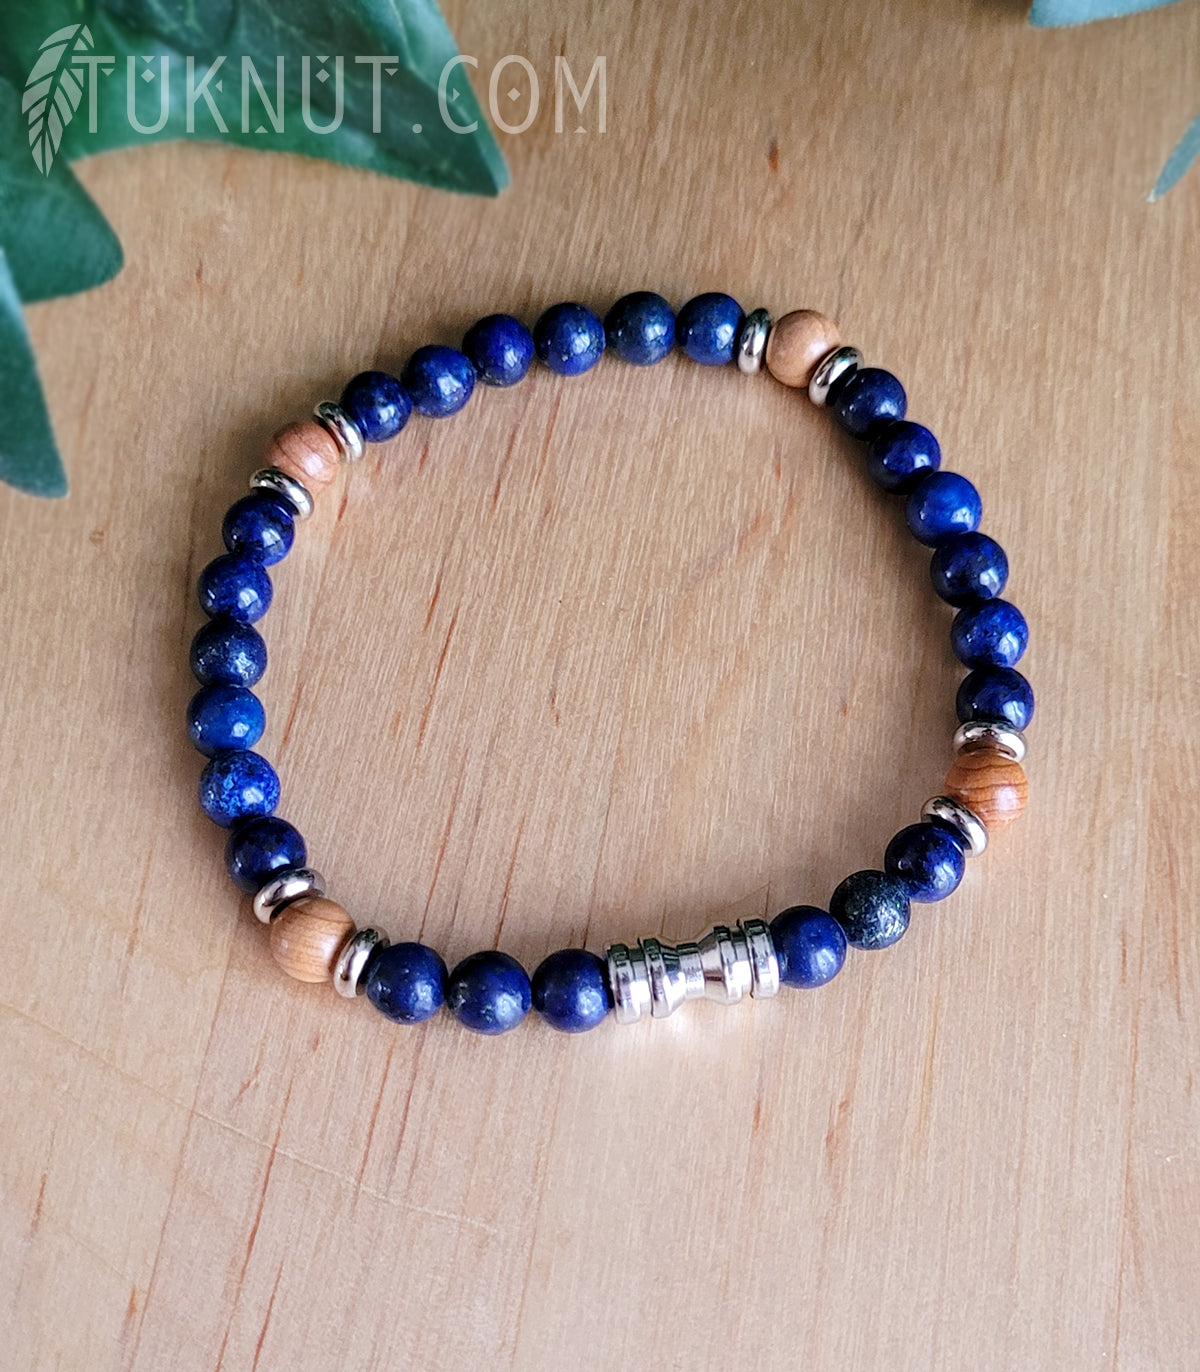 Bracelet extensible avec lapis lazuli, bois et acier inoxydable (couleurs : bleu foncé, brun pâle et argent) TUKNUT